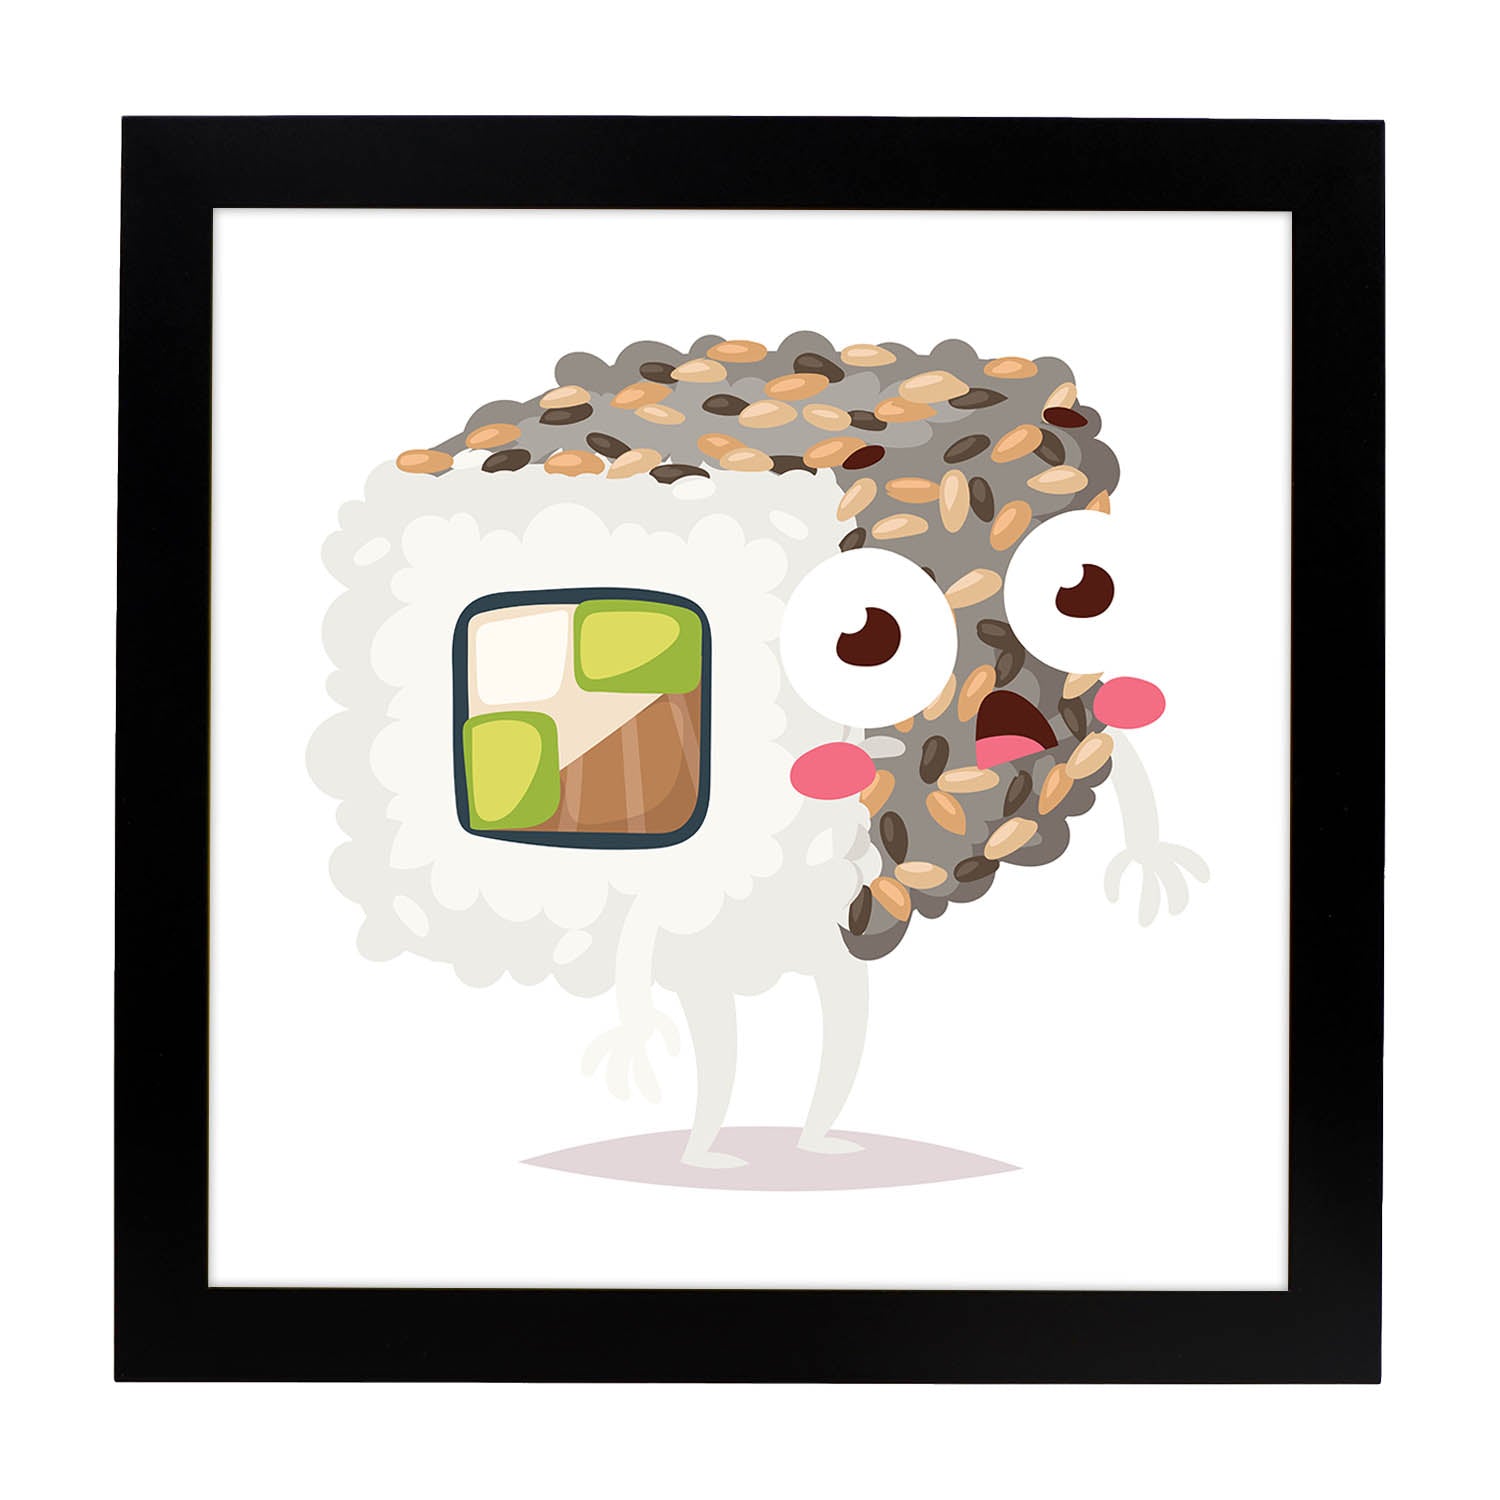 Poster cuadrado de sushi. Lámina Sushi maki california, con dibujos de sushi, onigiri, y otras comidas japonesas.-Artwork-Nacnic-25x25 cm-Marco Negro-Nacnic Estudio SL